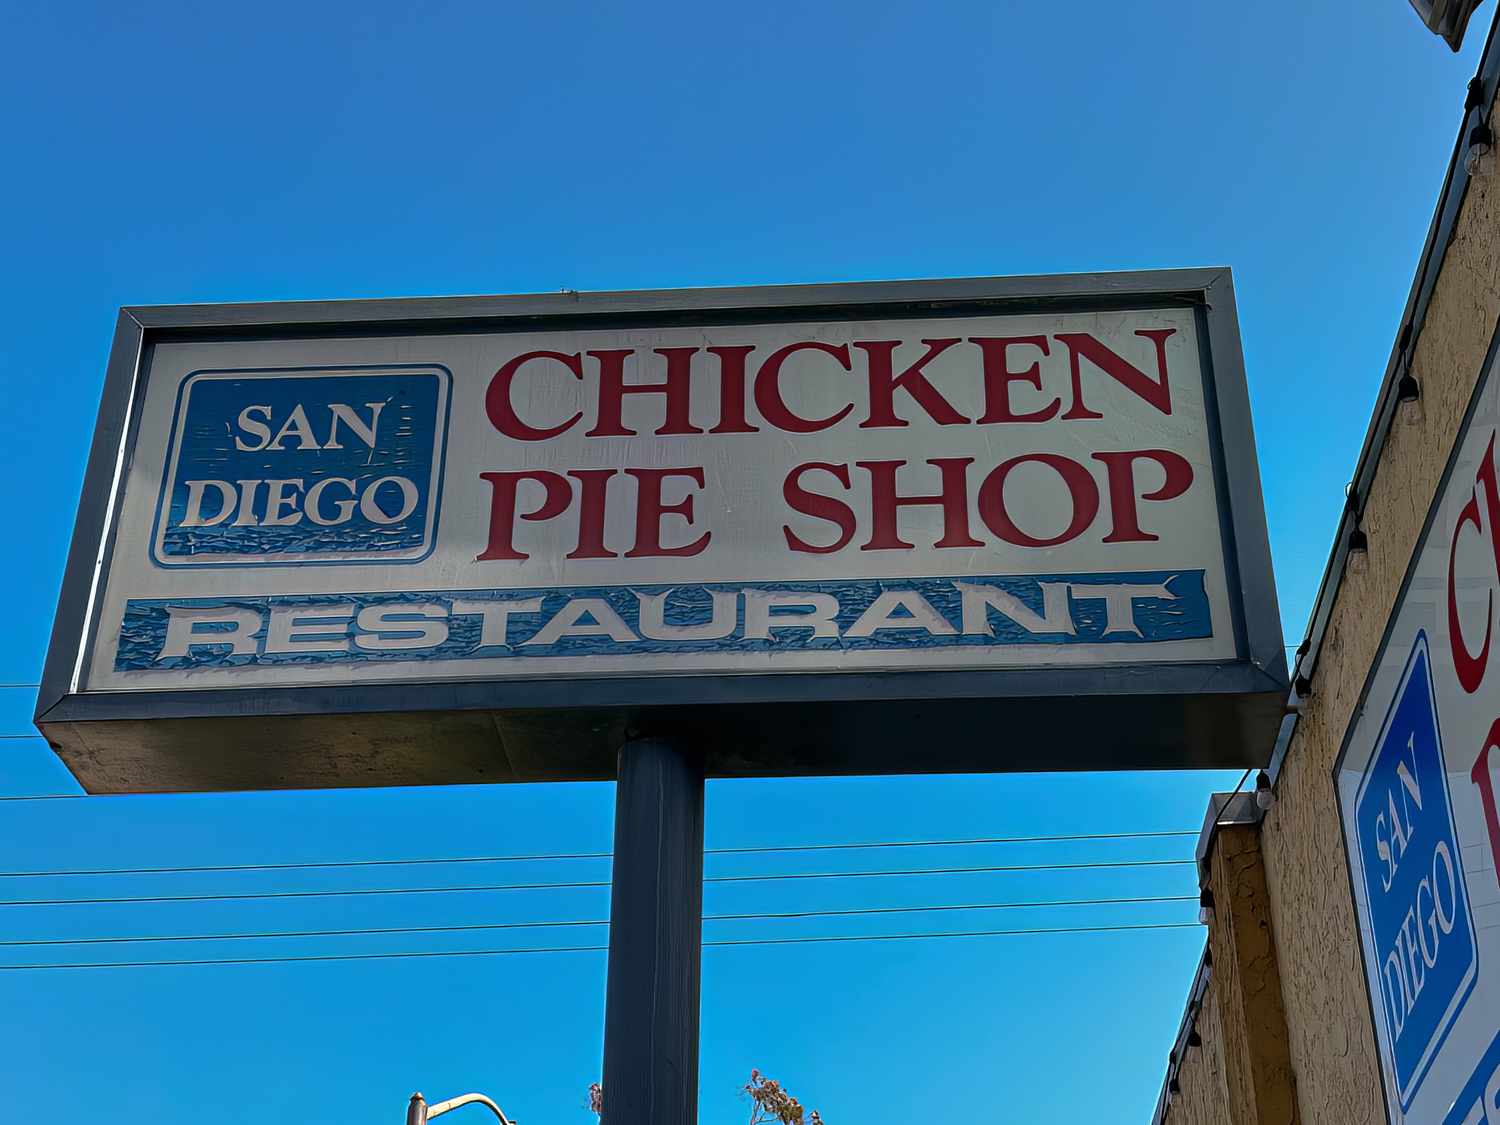 San Diego’s Chicken Pie Shop